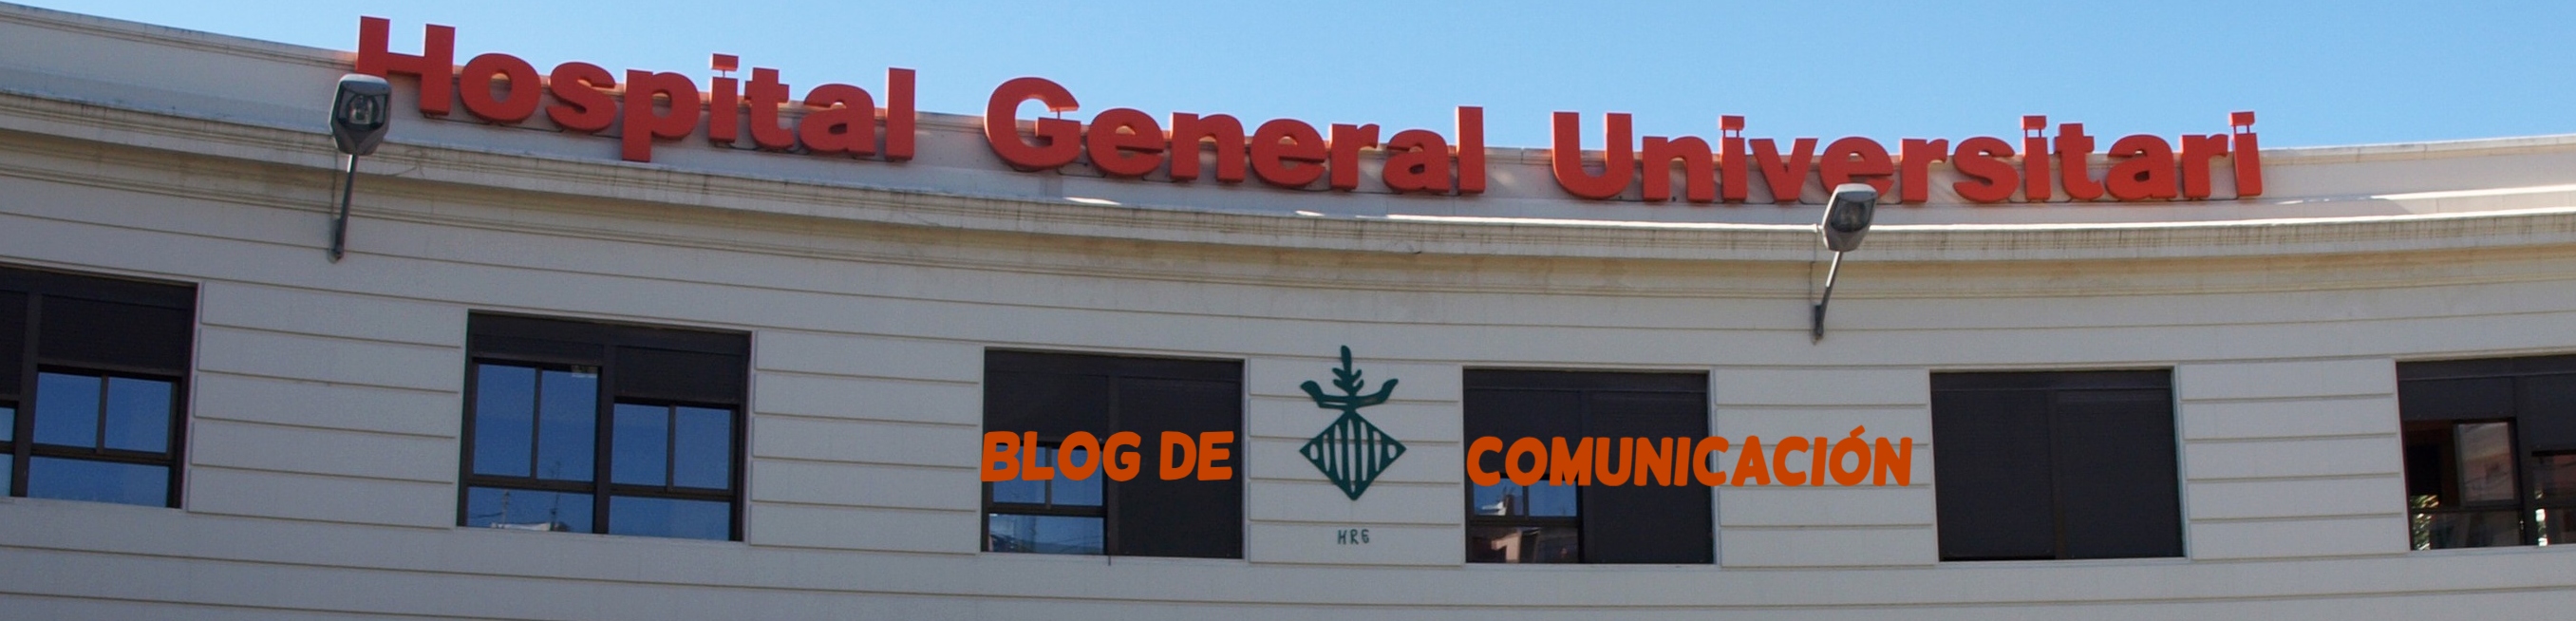 Blog de comunicación Valencia – Hospital General